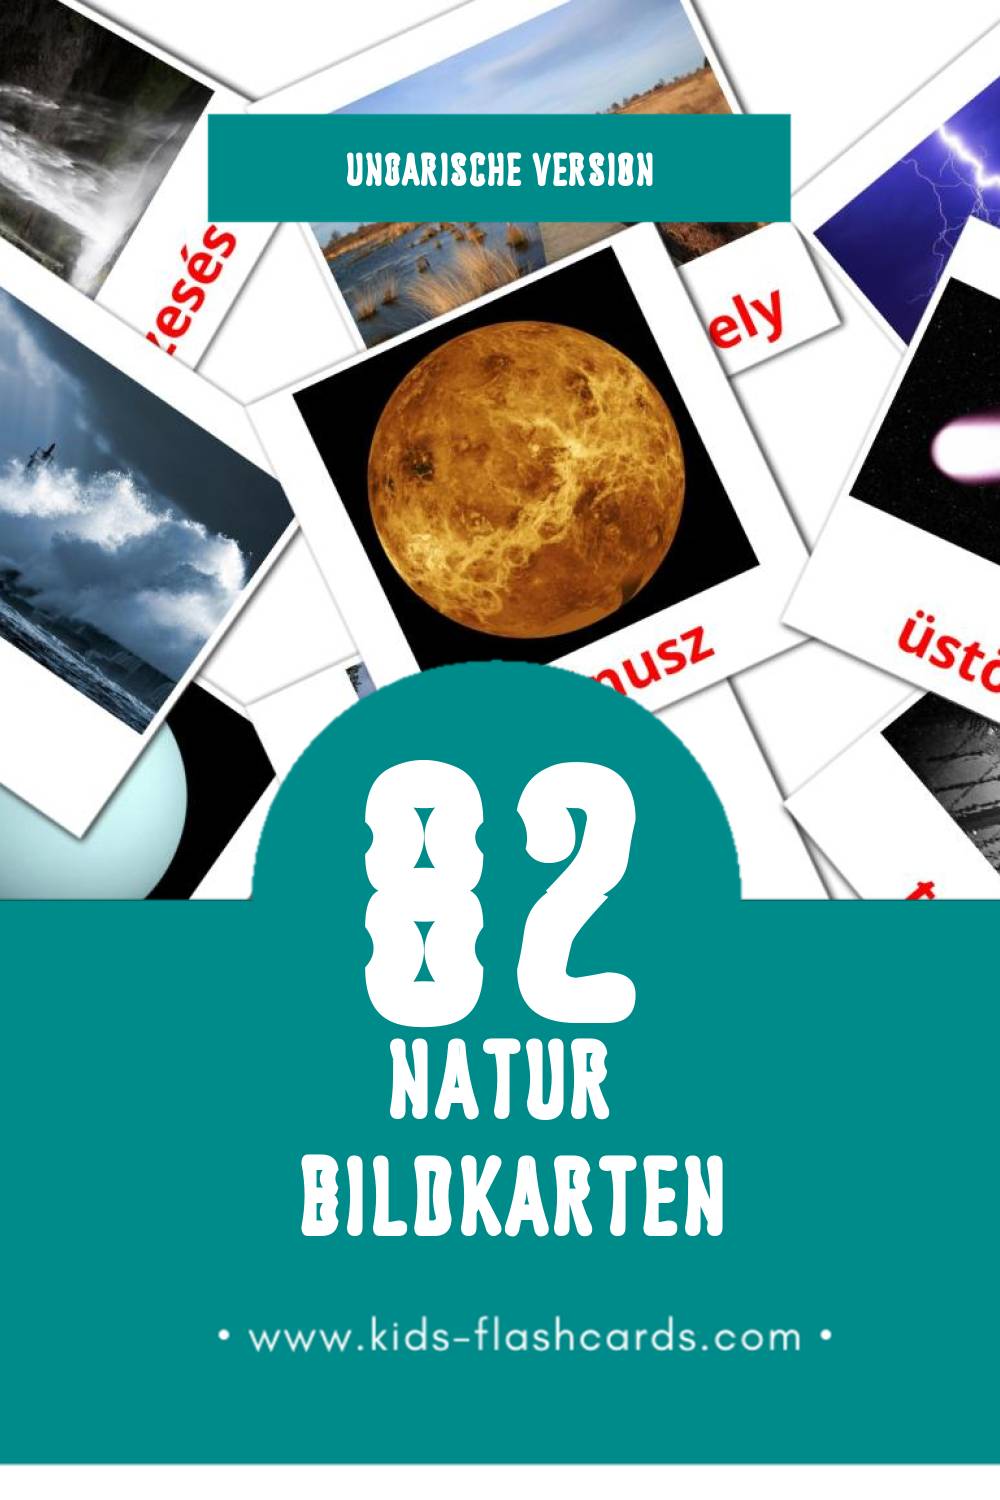 Visual Természet Flashcards für Kleinkinder (52 Karten in Ungarisch)